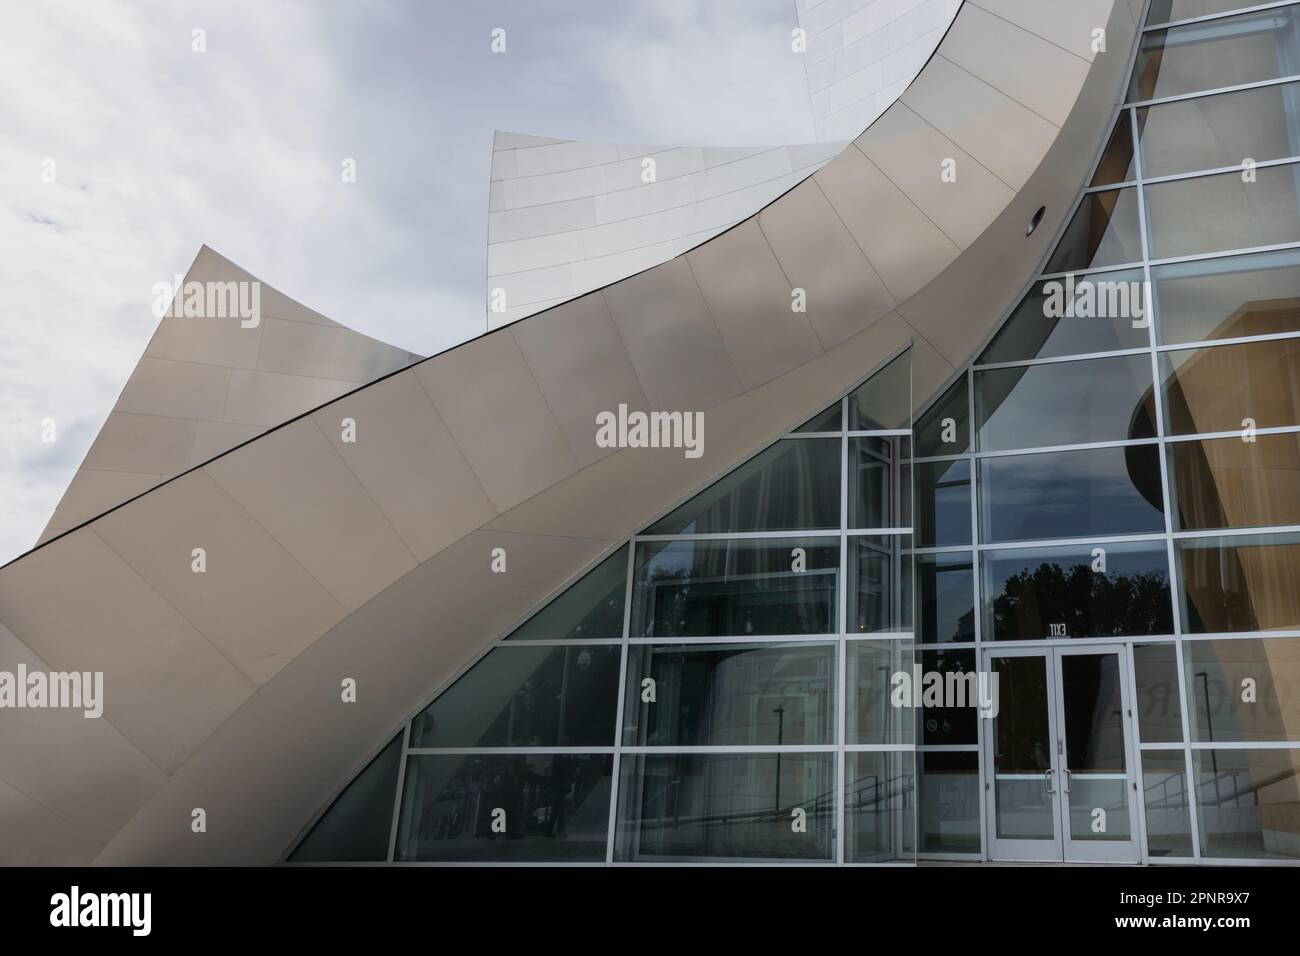 Le Walt Disney concert Hall, situé dans le centre-ville de Los Angeles, en Californie, a été conçu par le célèbre architecte Frank Gehry et terminé en 2003. Banque D'Images